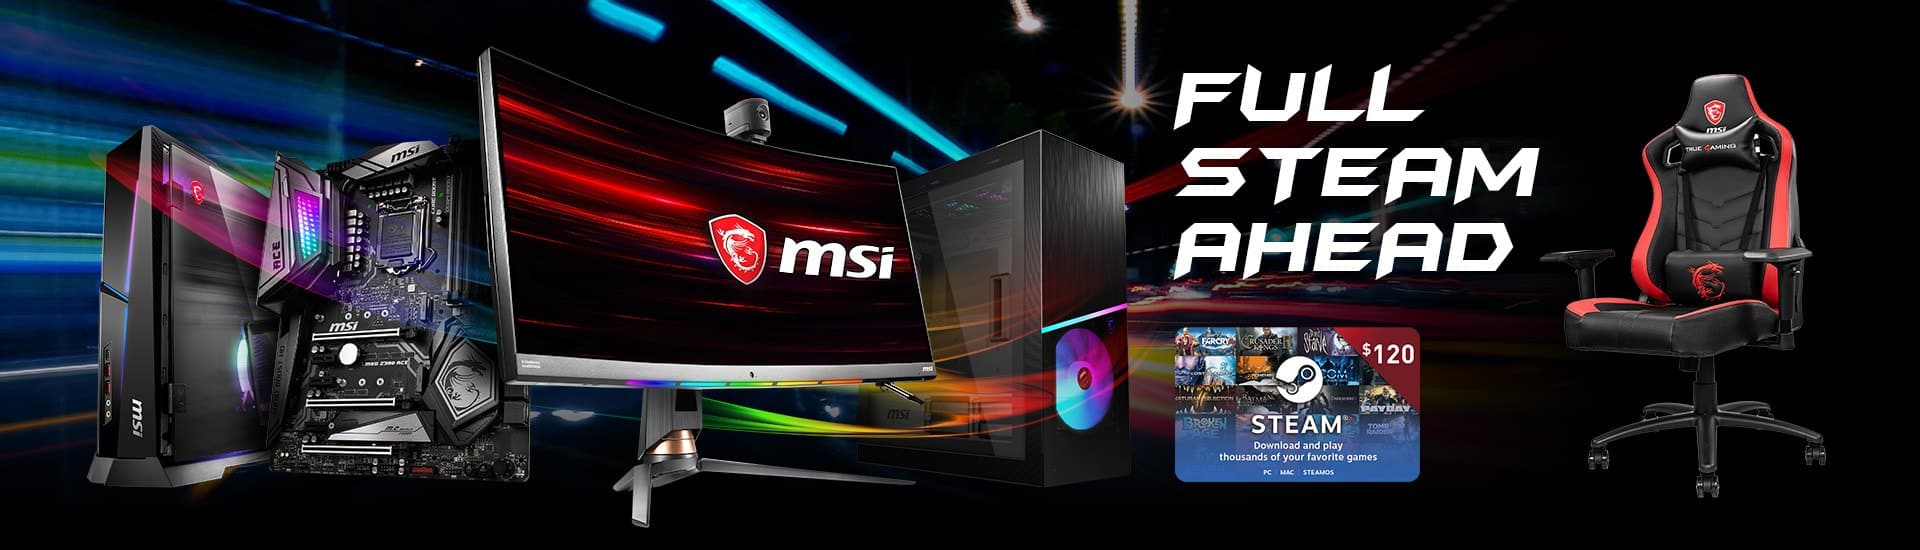 เพิ่มพลังด้วย MSI GAMING PC ที่ดีที่สุด!! เติม STEAM WALLET ให้พร้อม และไปคว้าชัยชนะไปกับ MSI !! 1